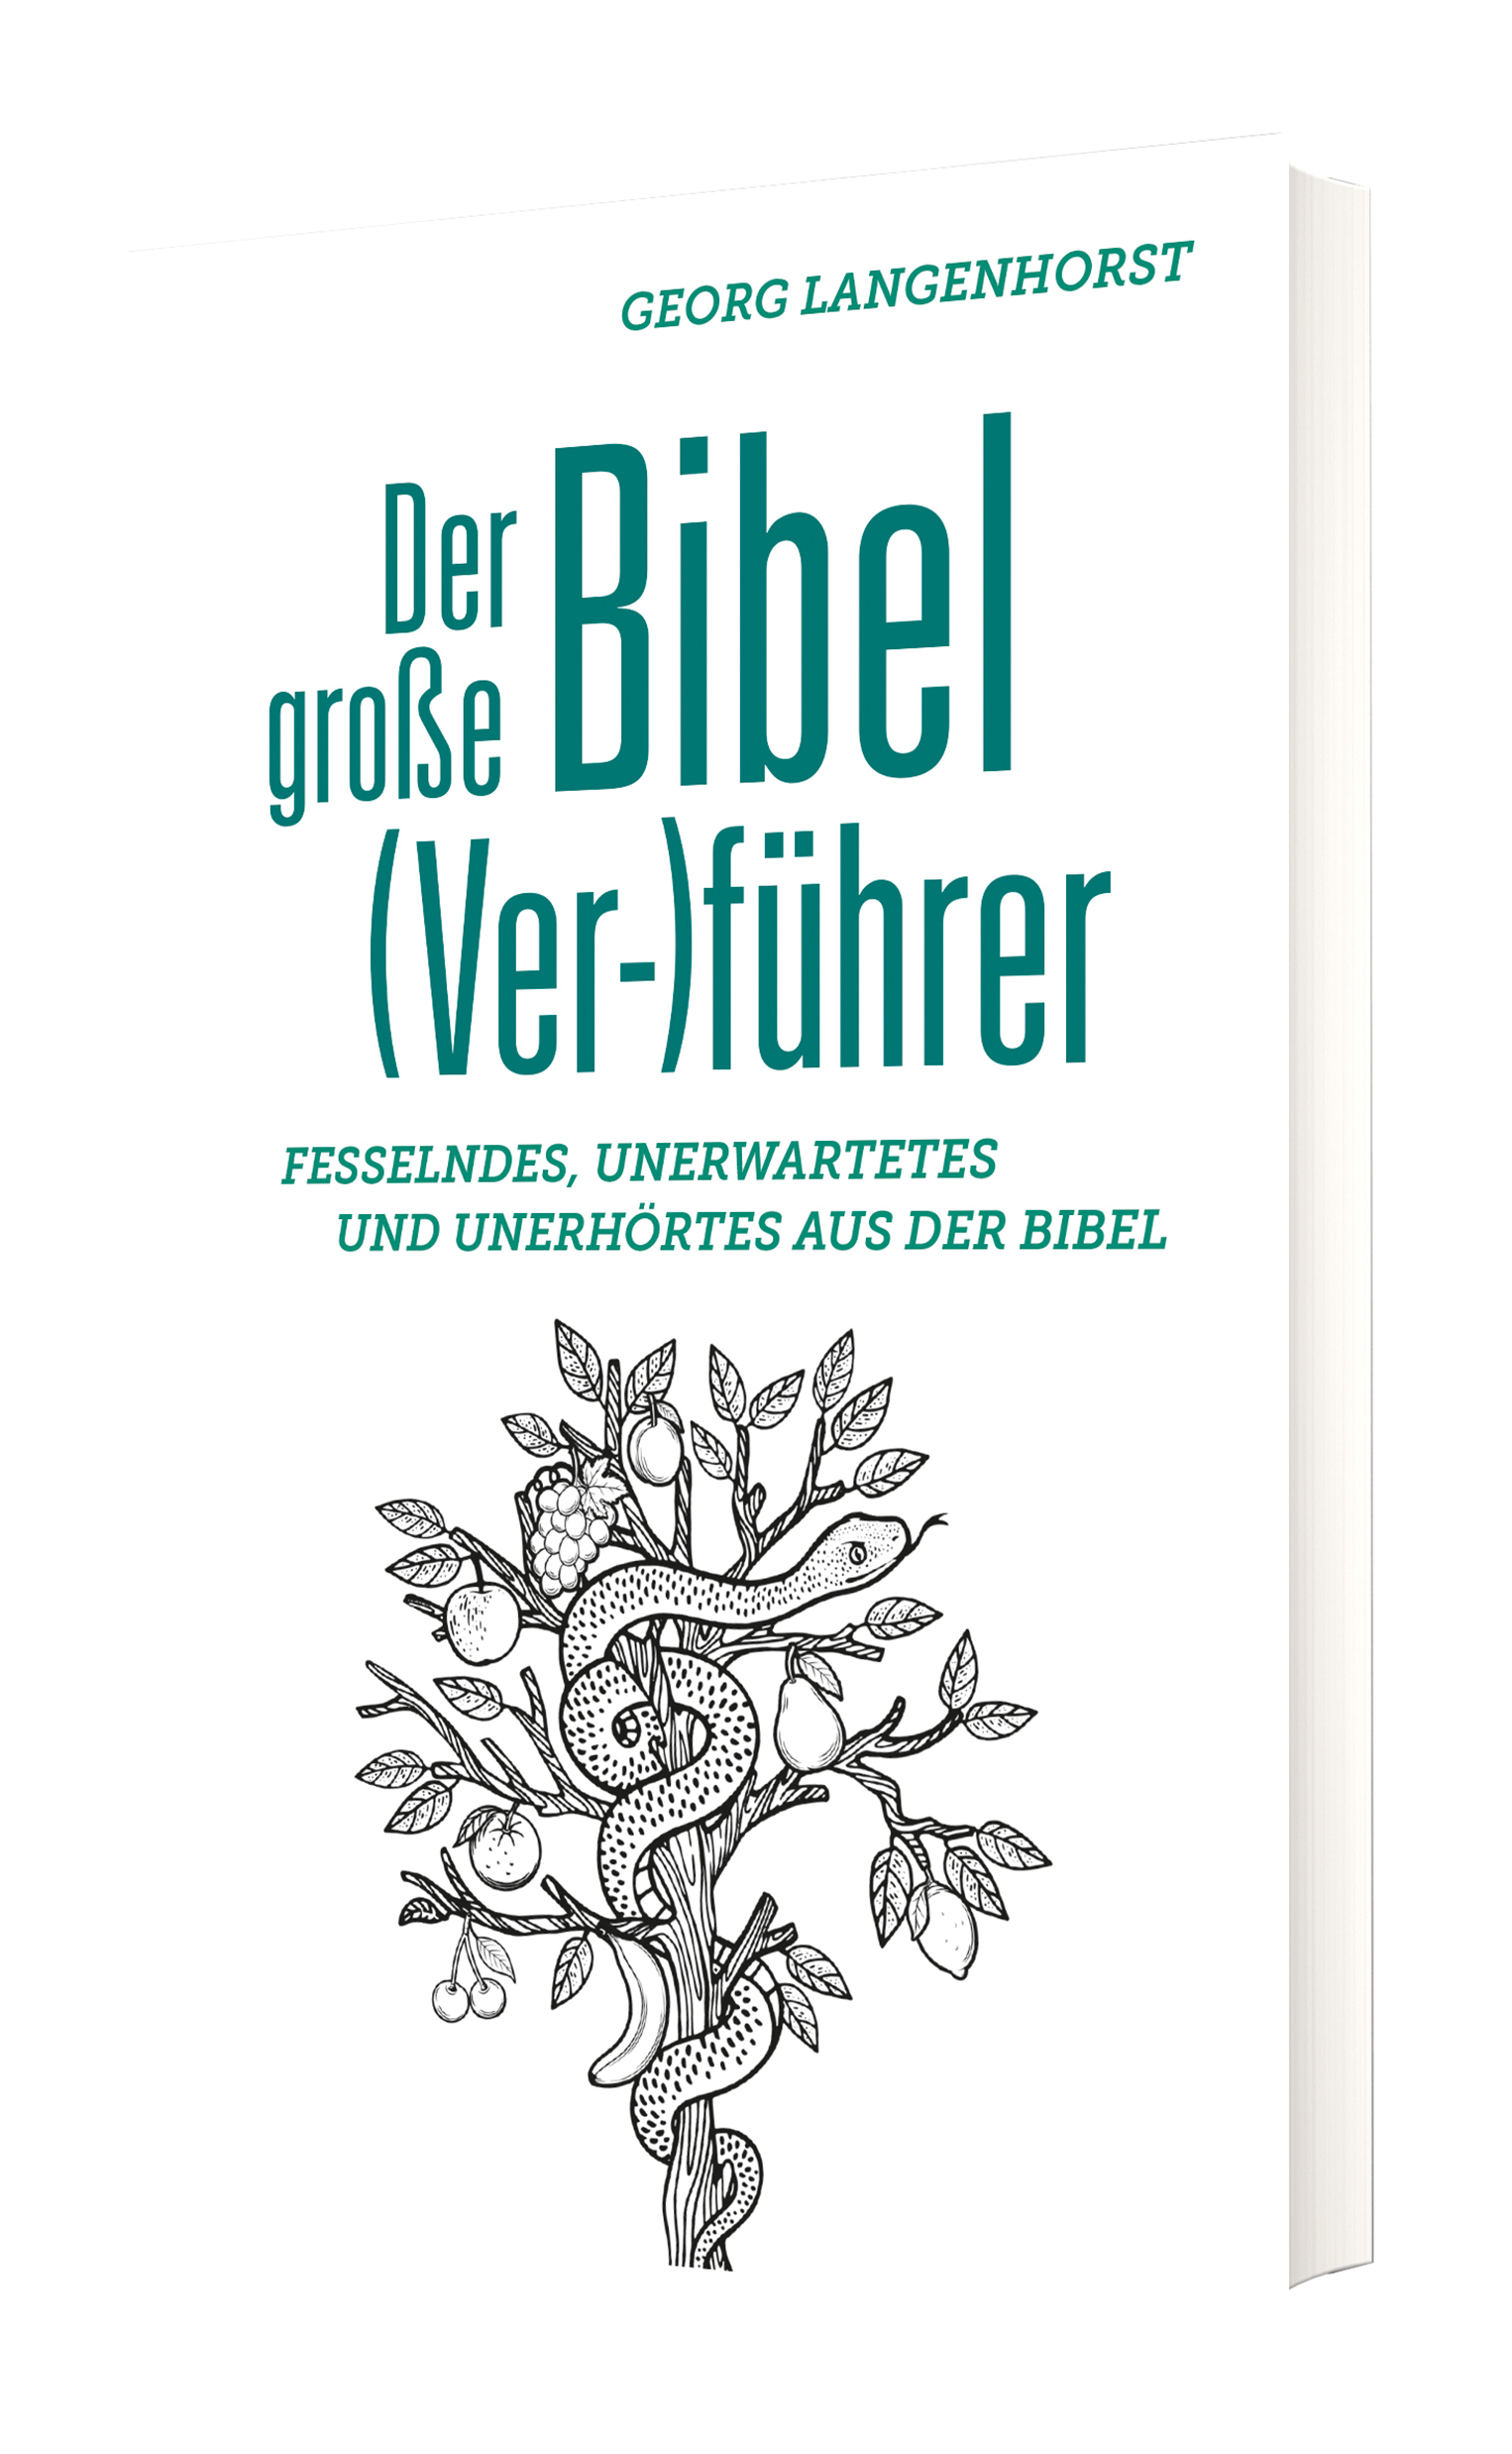 Der große Bibel (Ver-)führer - Cover